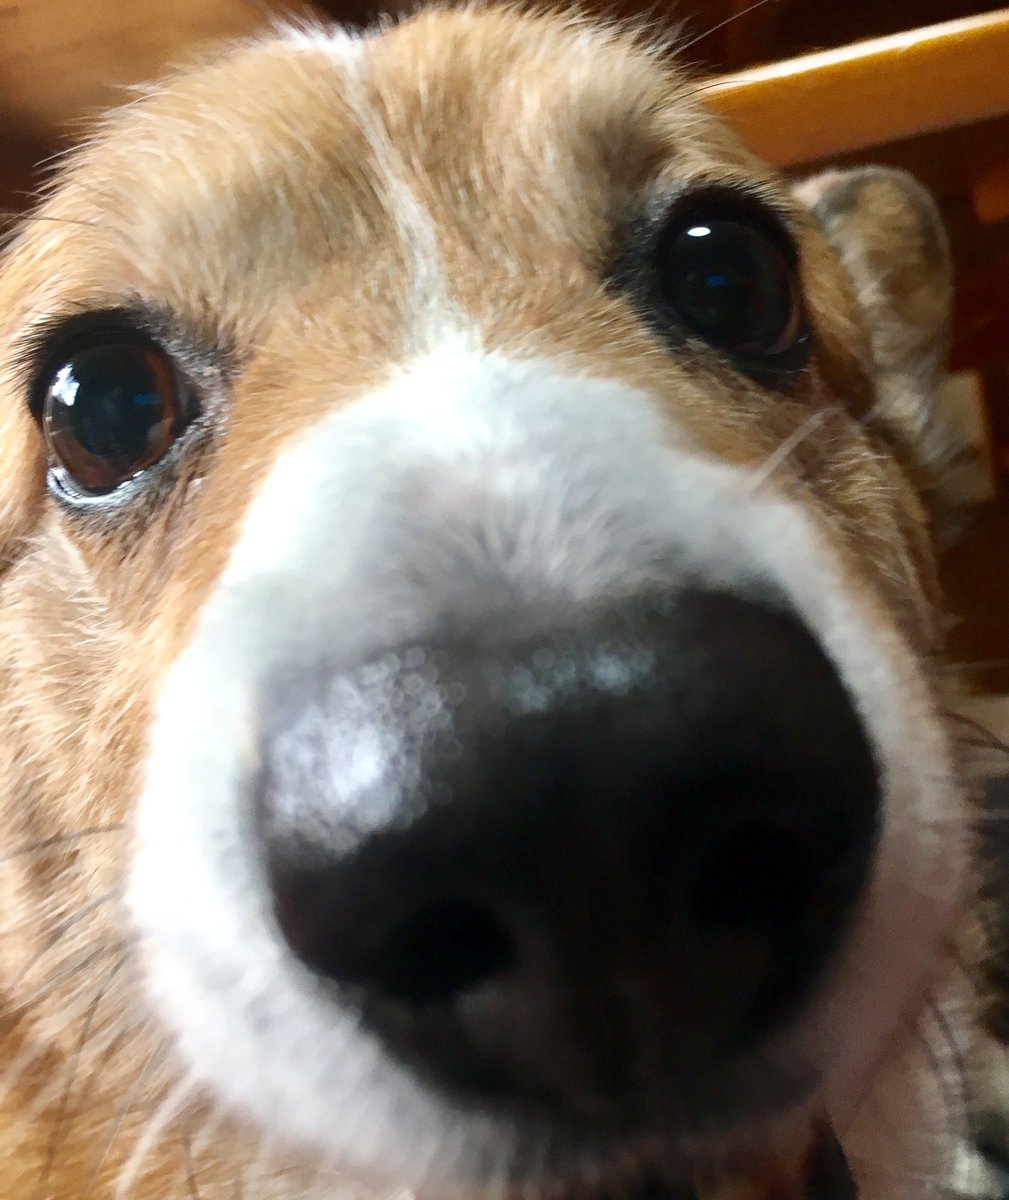 本日は愛犬の日ですって!うちの愛犬のぽっちゃりコーギーのサンちゃんのスタンプ、紹介しときます!w https://t.co/fY1H4BBydh #愛犬の日 #LINEスタンプ 